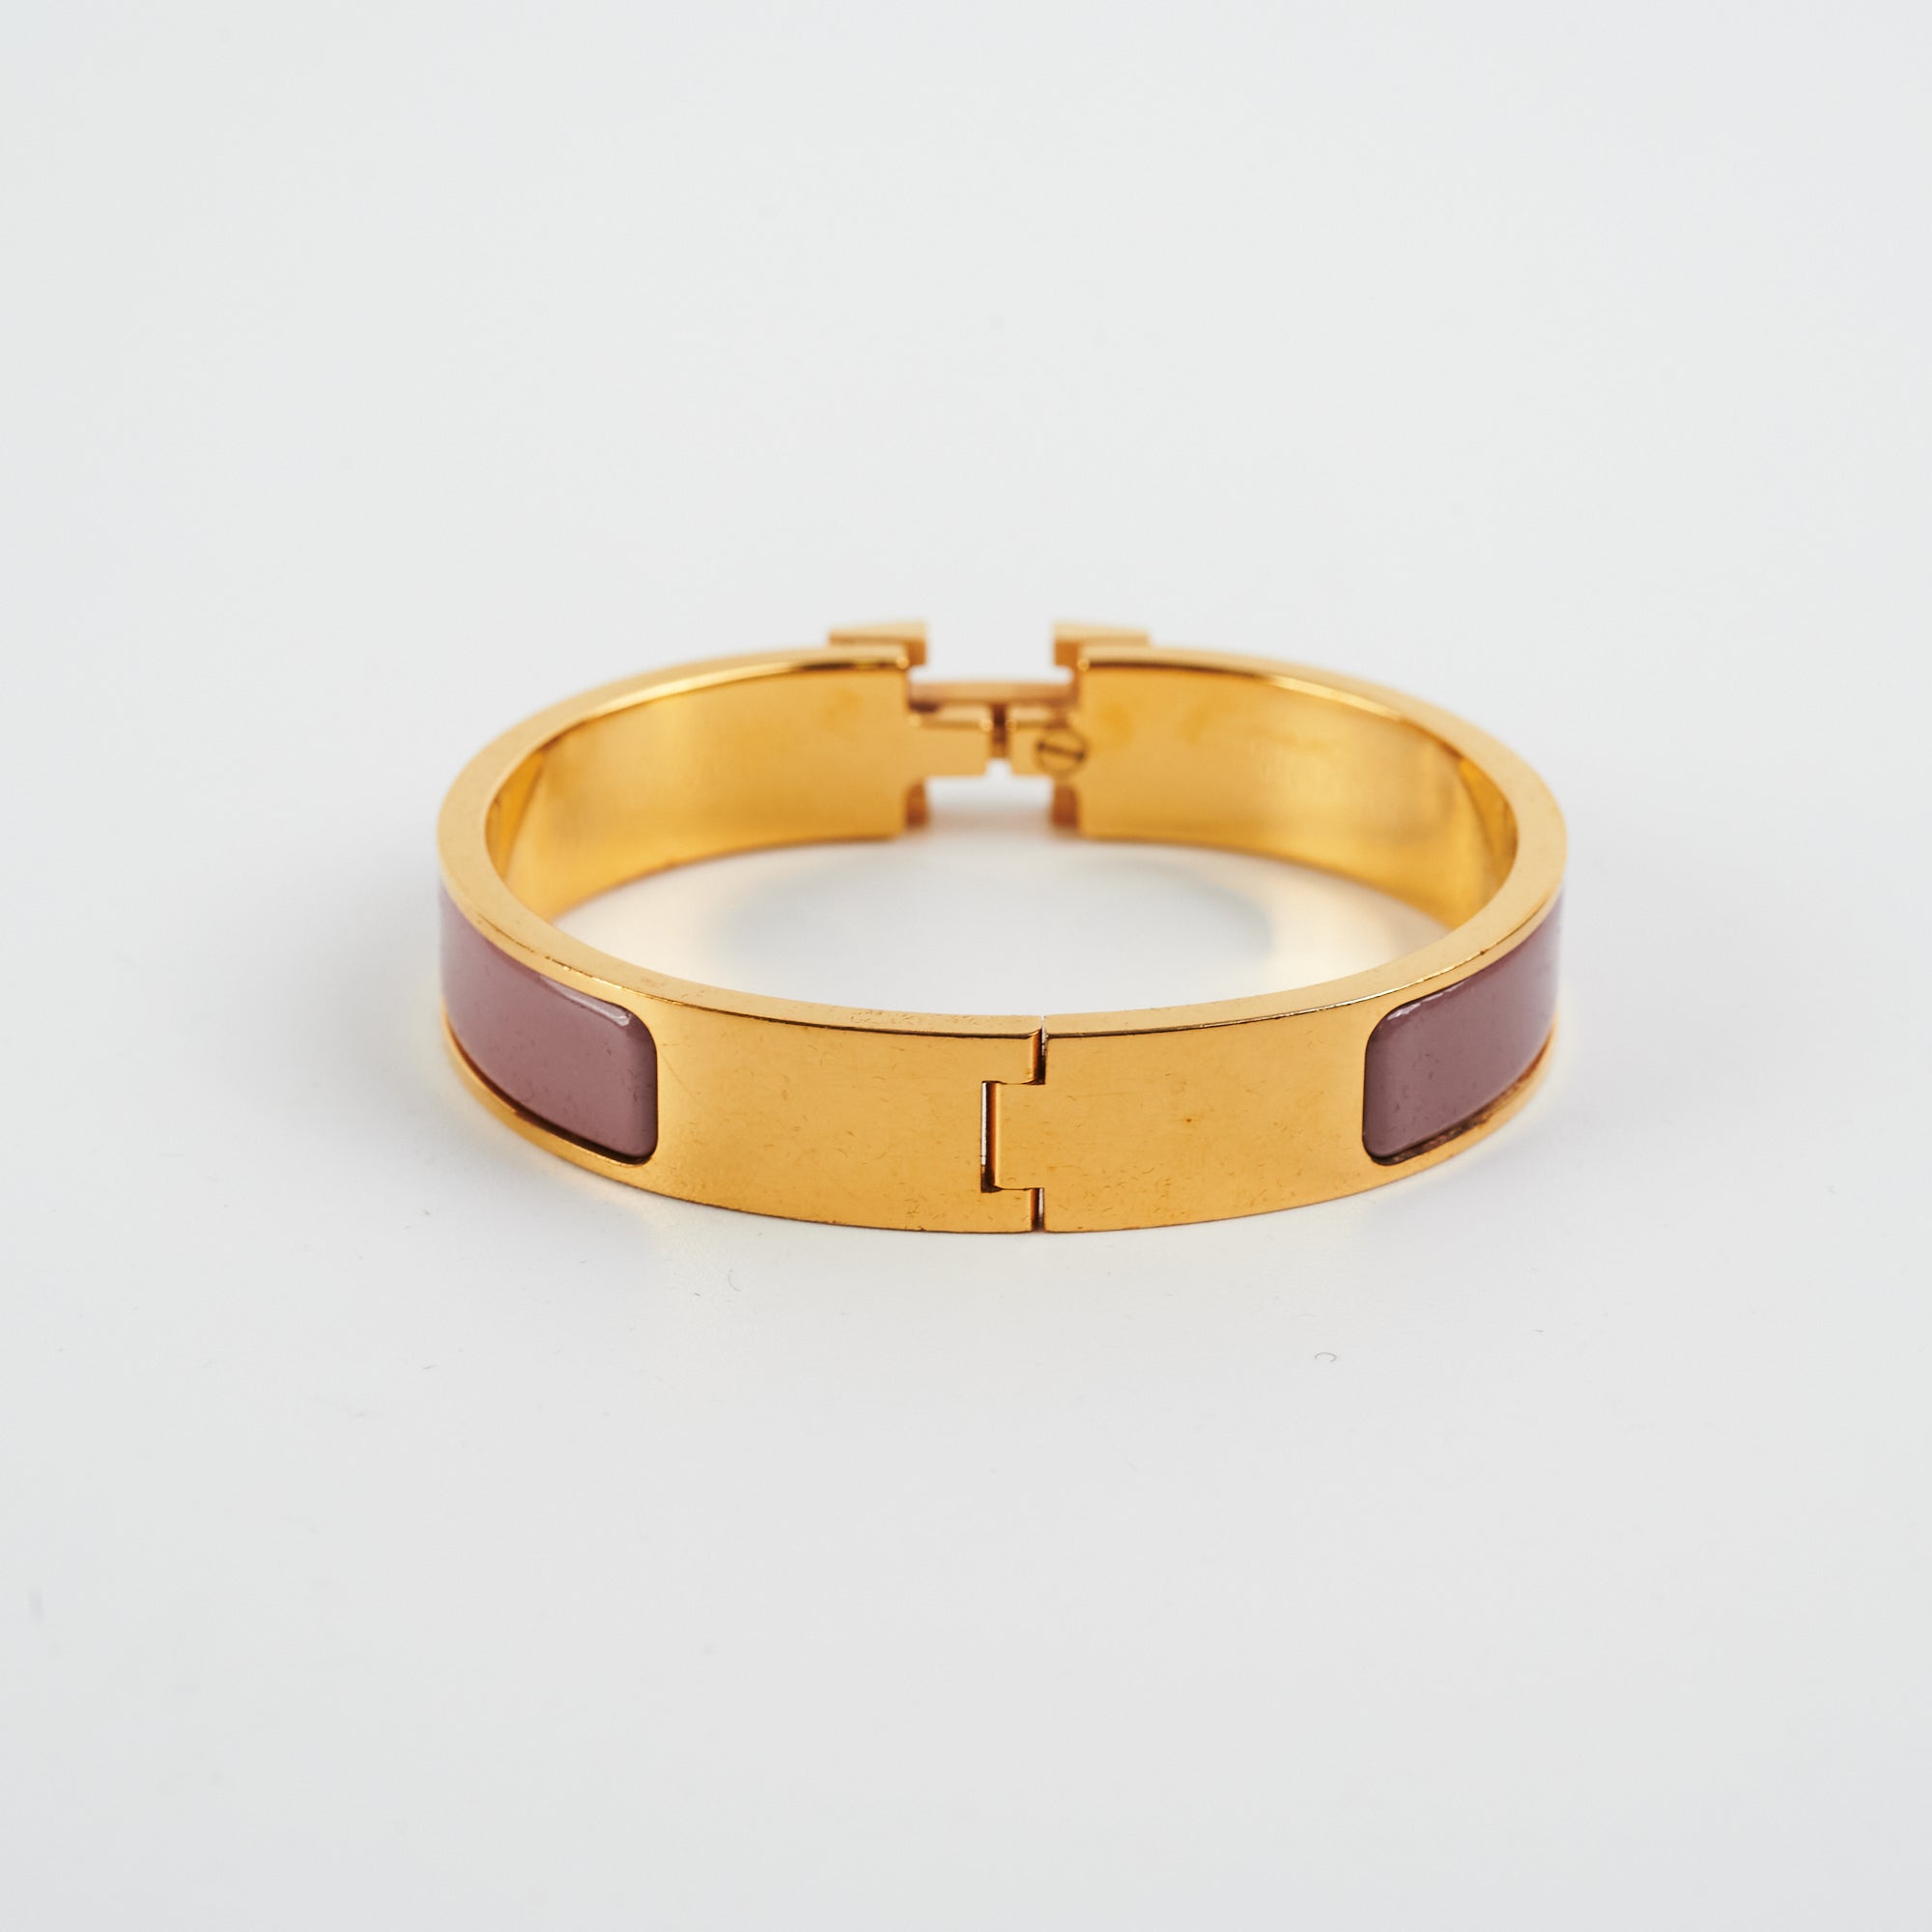 Shopbop x Vivrelle Hermes Clic H Bracelet Size PM